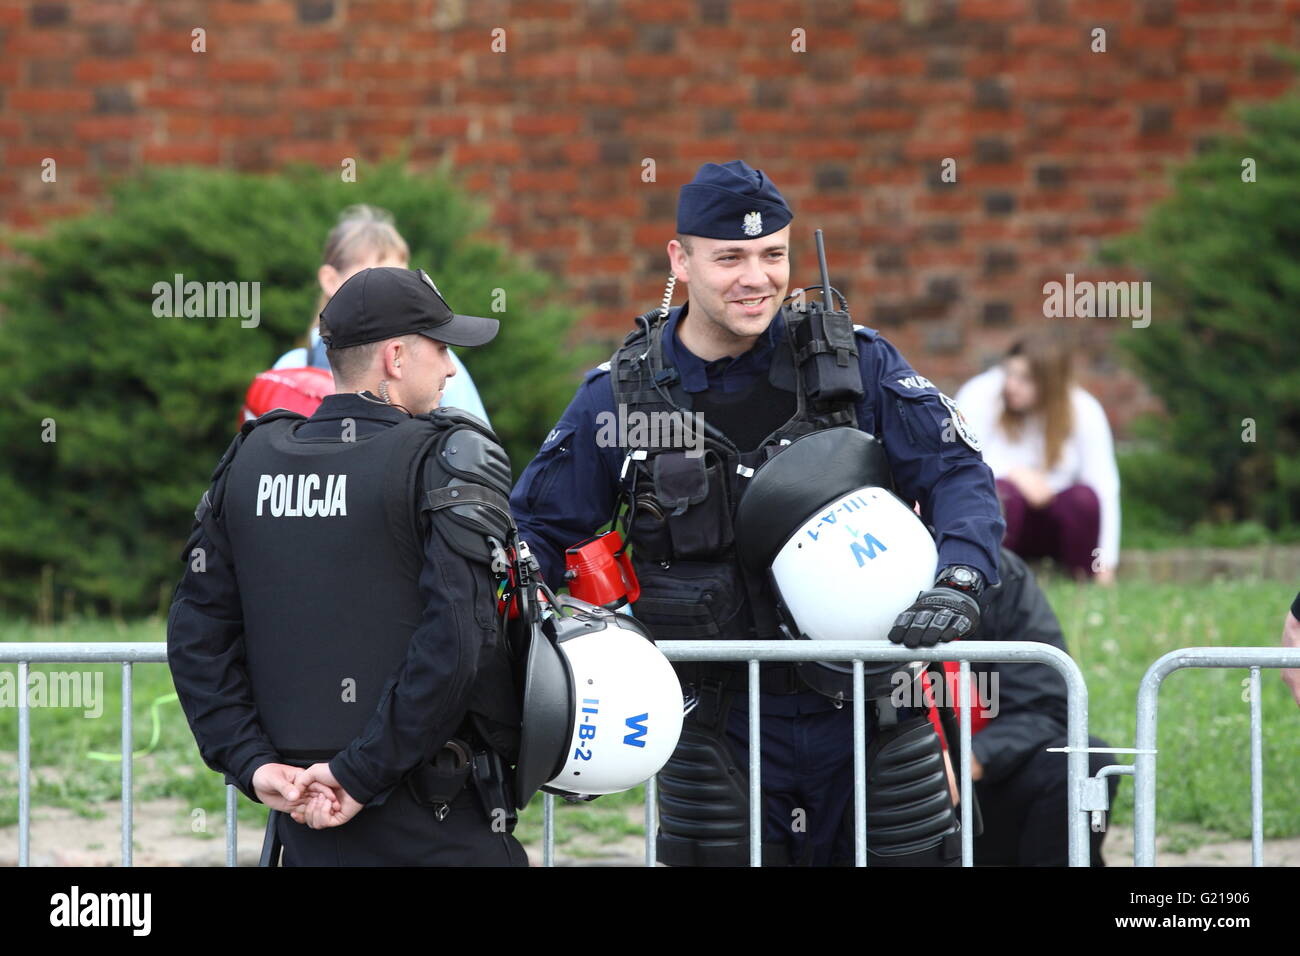 Gdansk, Polonia. 21 de mayo, 2016. La policía polaca pruebas nuevo patrón  de uniforme táctico . Nuevo uniforme está inspirado en el estilo de la  policía francesa. Uniforme es azul marino color